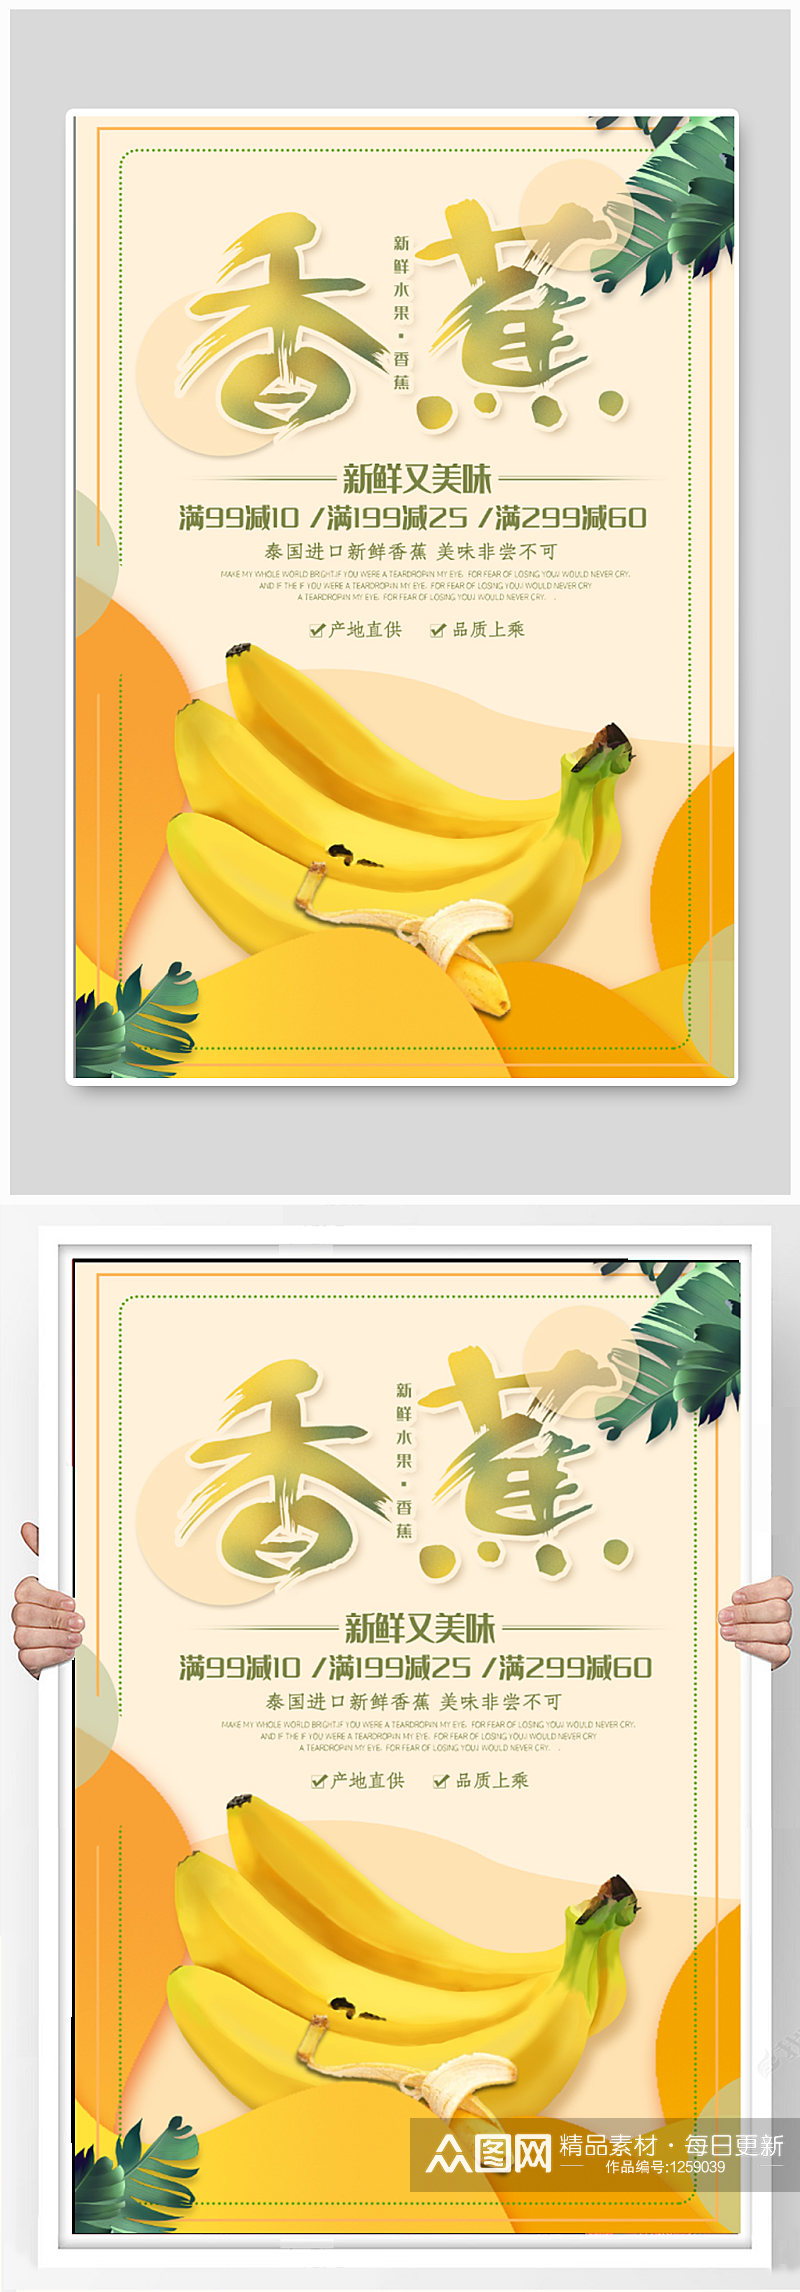 香蕉水果店促销海报素材